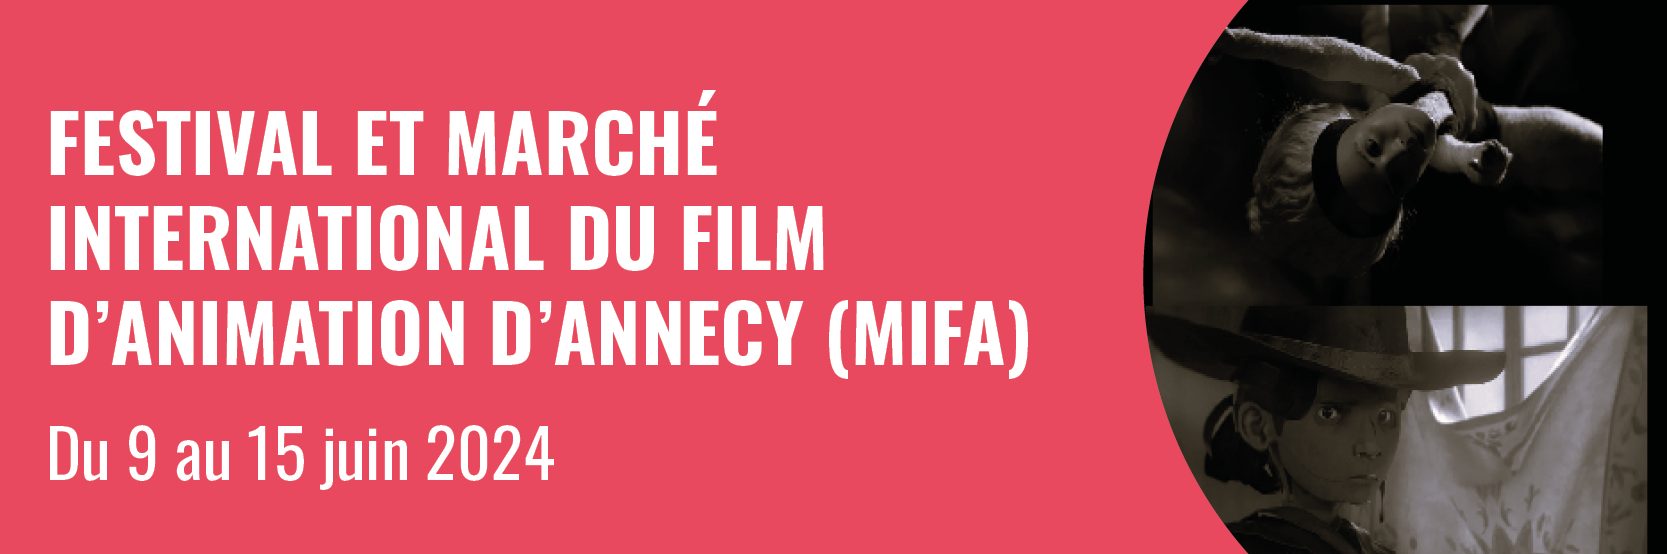 Bouton menant vers la page Festival et marché international du film d'animation d'Annecy (Mifa)